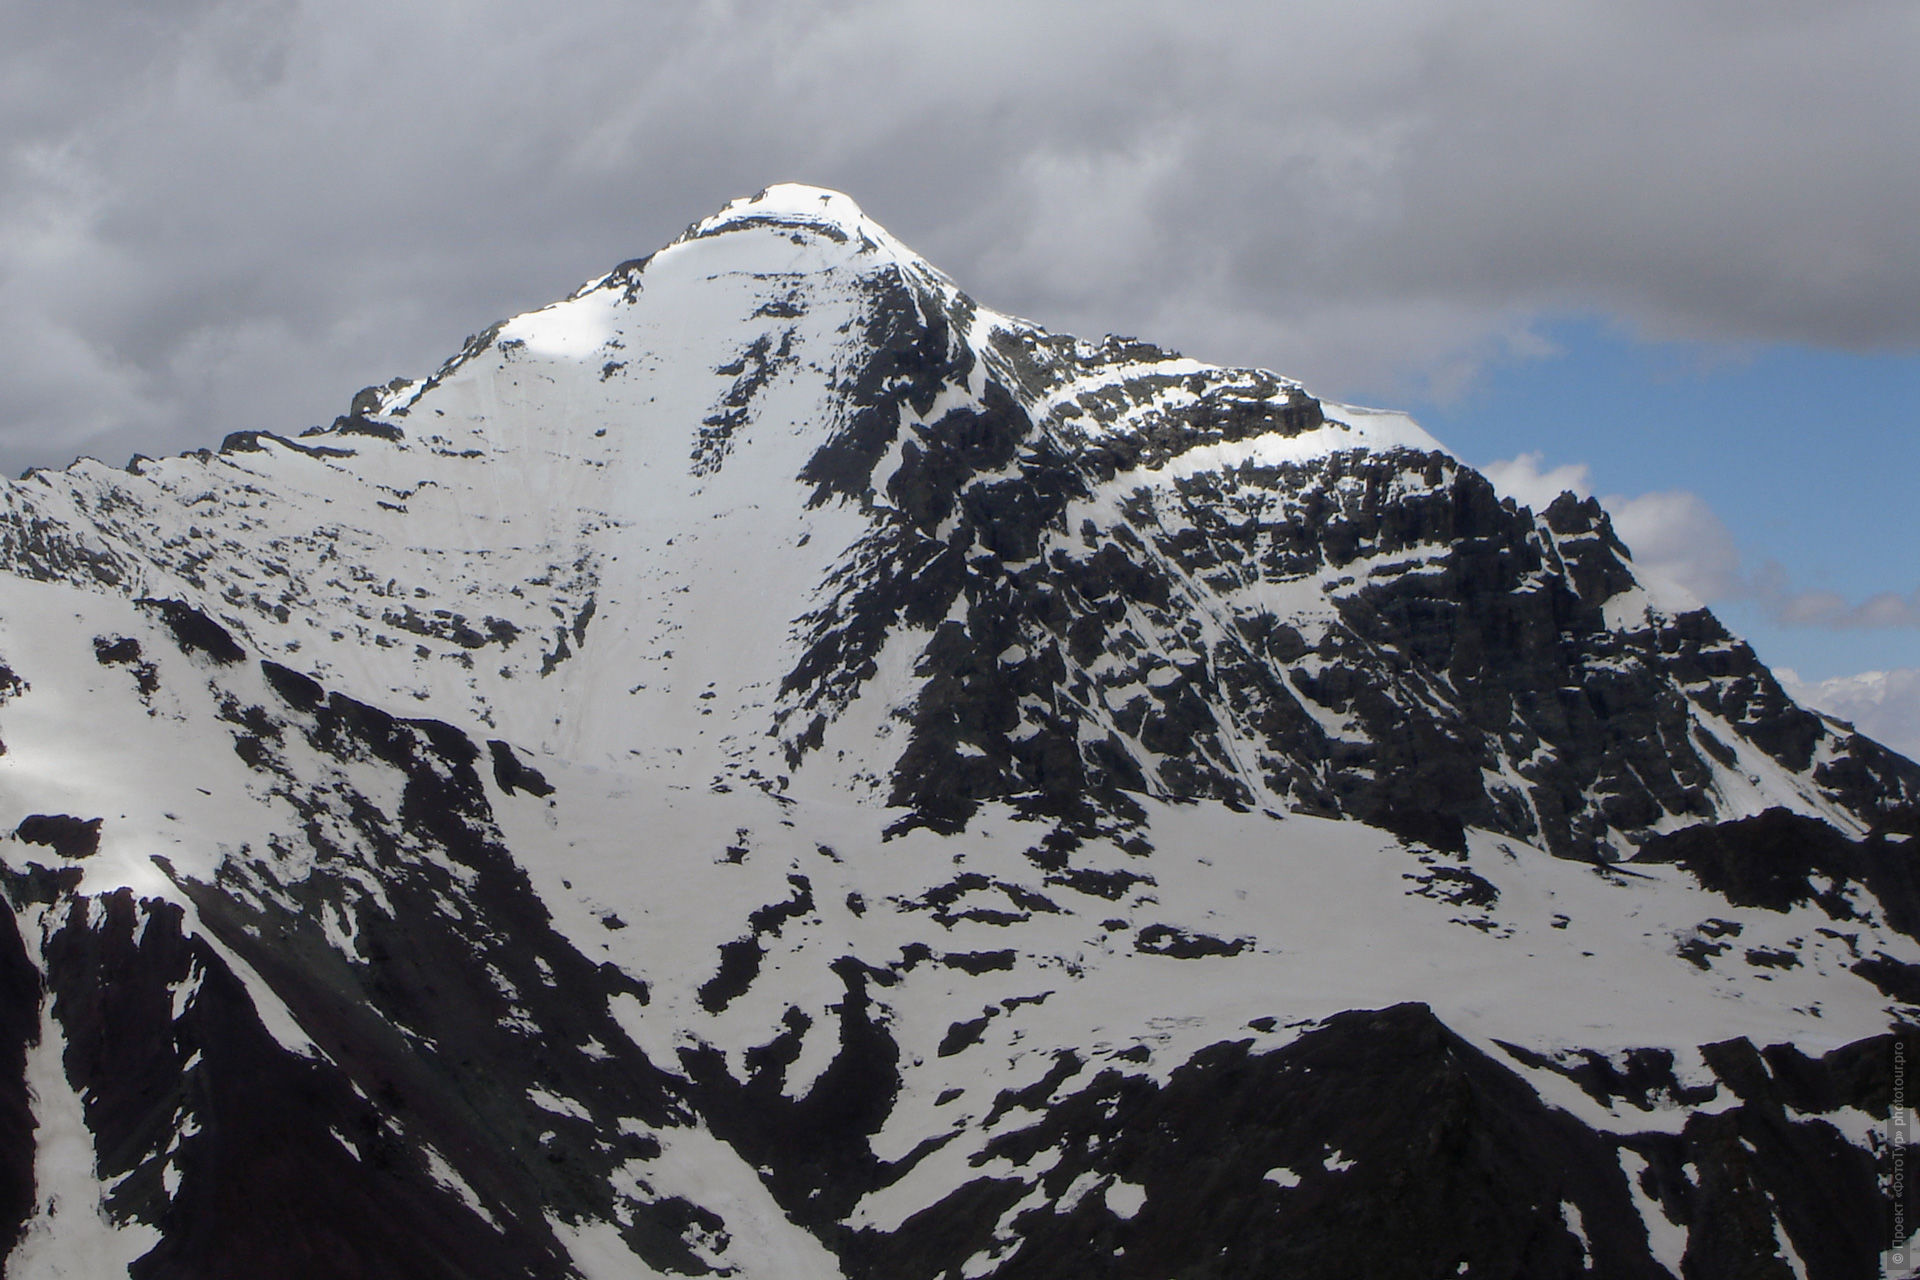 Сток Кангри - самая высокая вершина Ладакха.